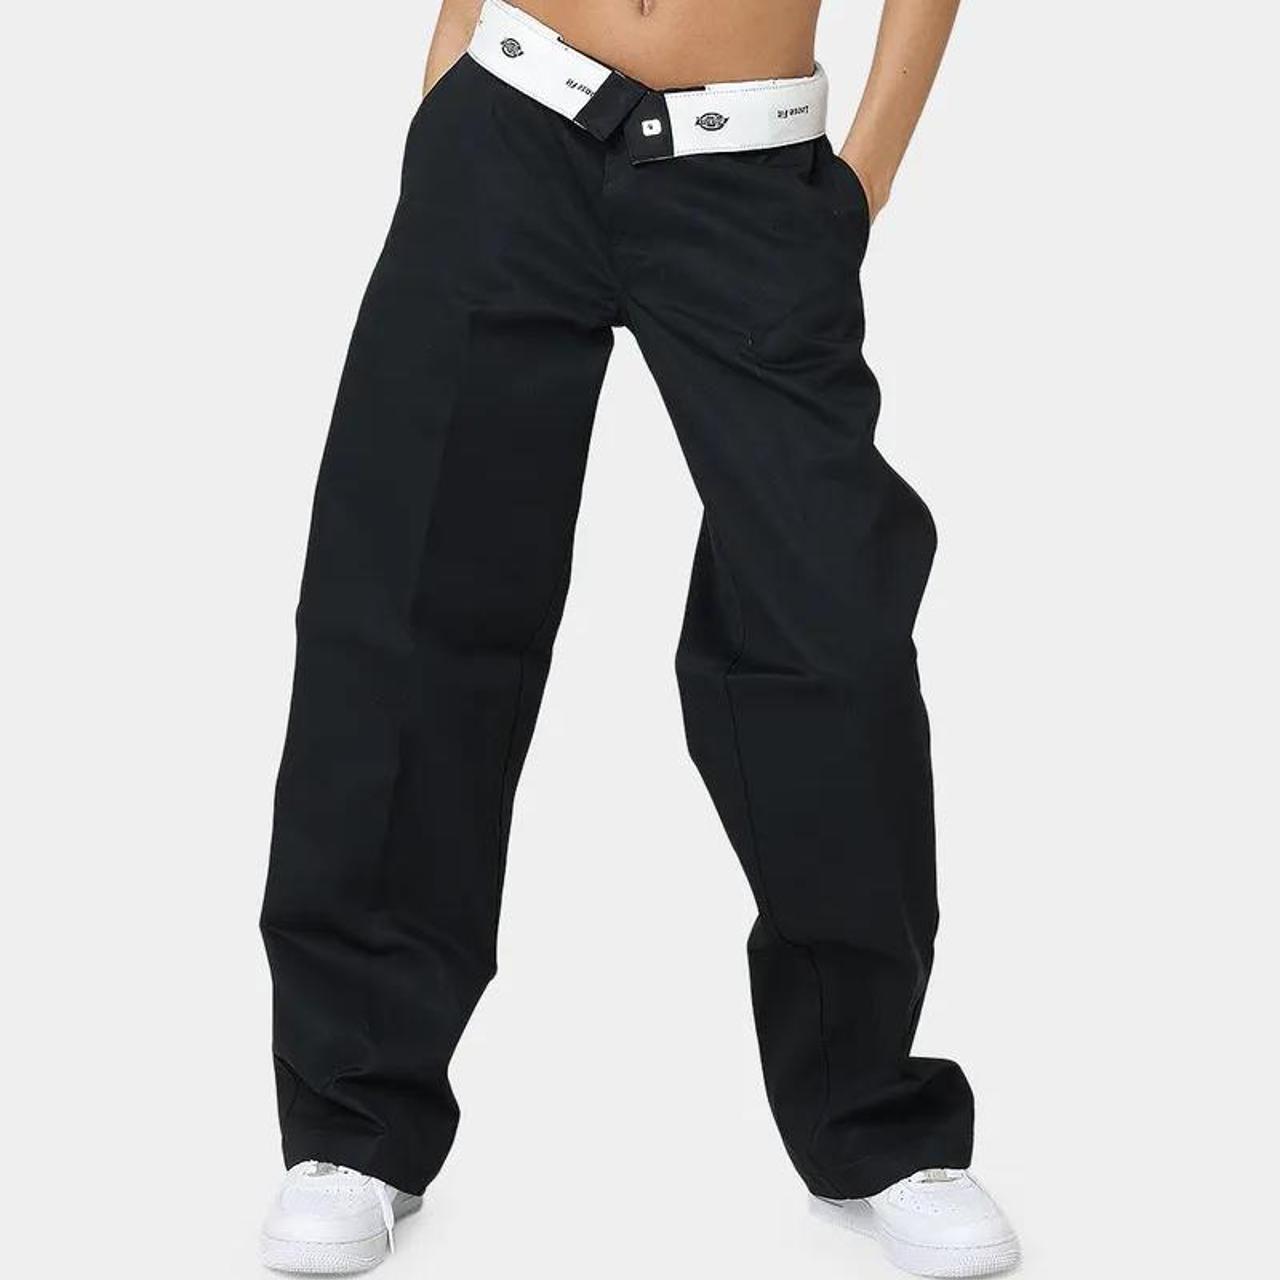 Dickies loose fit work pants in black - BRAND... - Depop